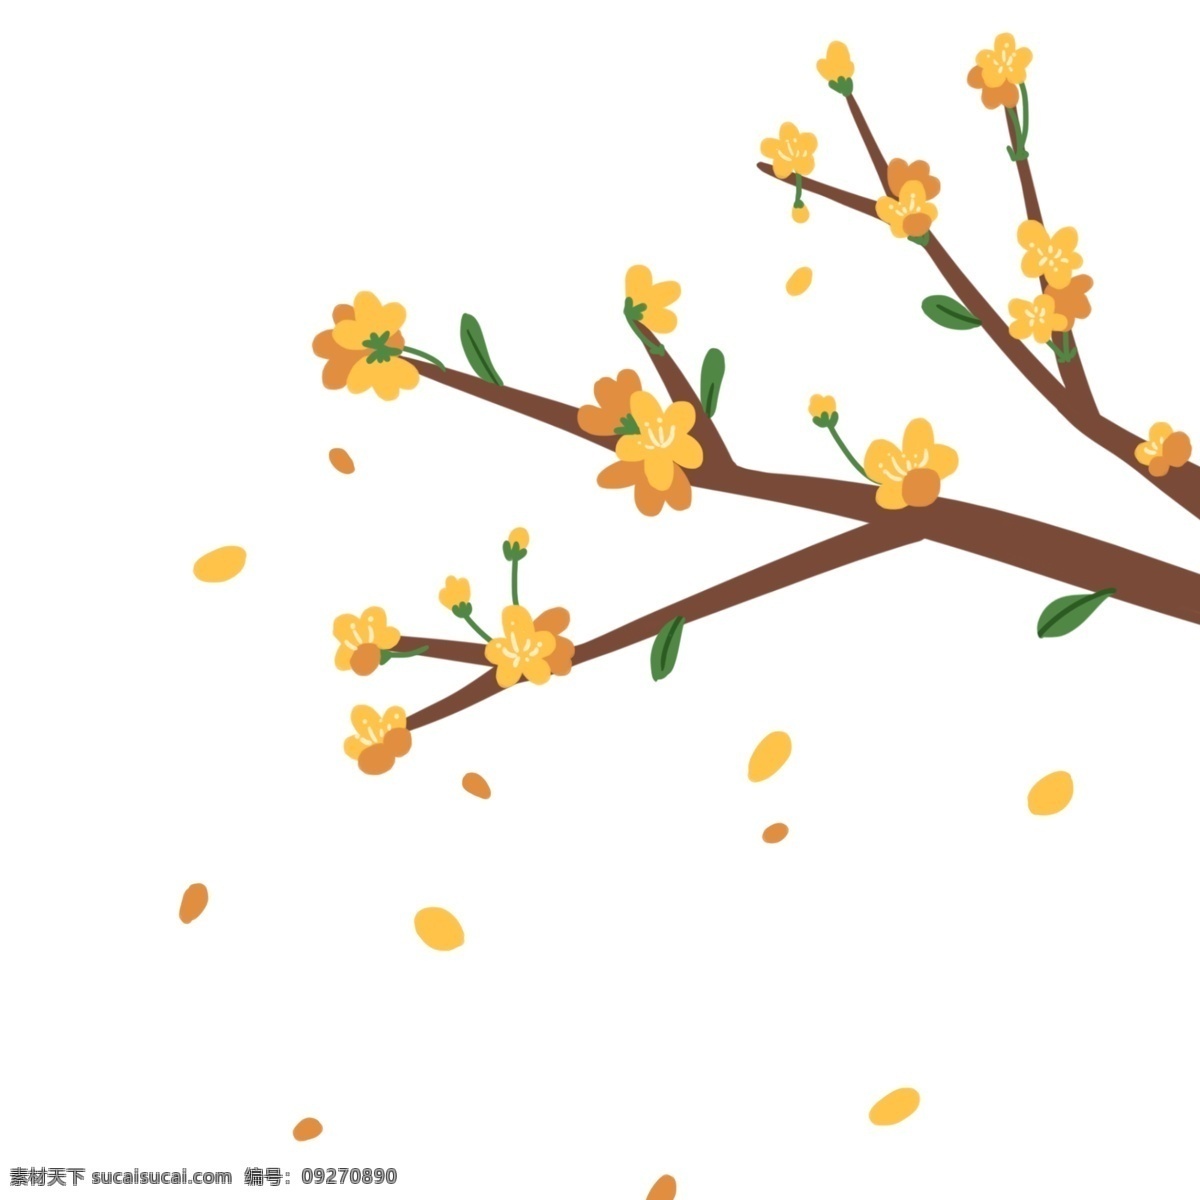 黄色 花瓣 装饰 插画 黄色的花瓣 漂亮的花瓣 创意花瓣 花瓣装饰 绿色的叶子 立体花瓣 花瓣插画